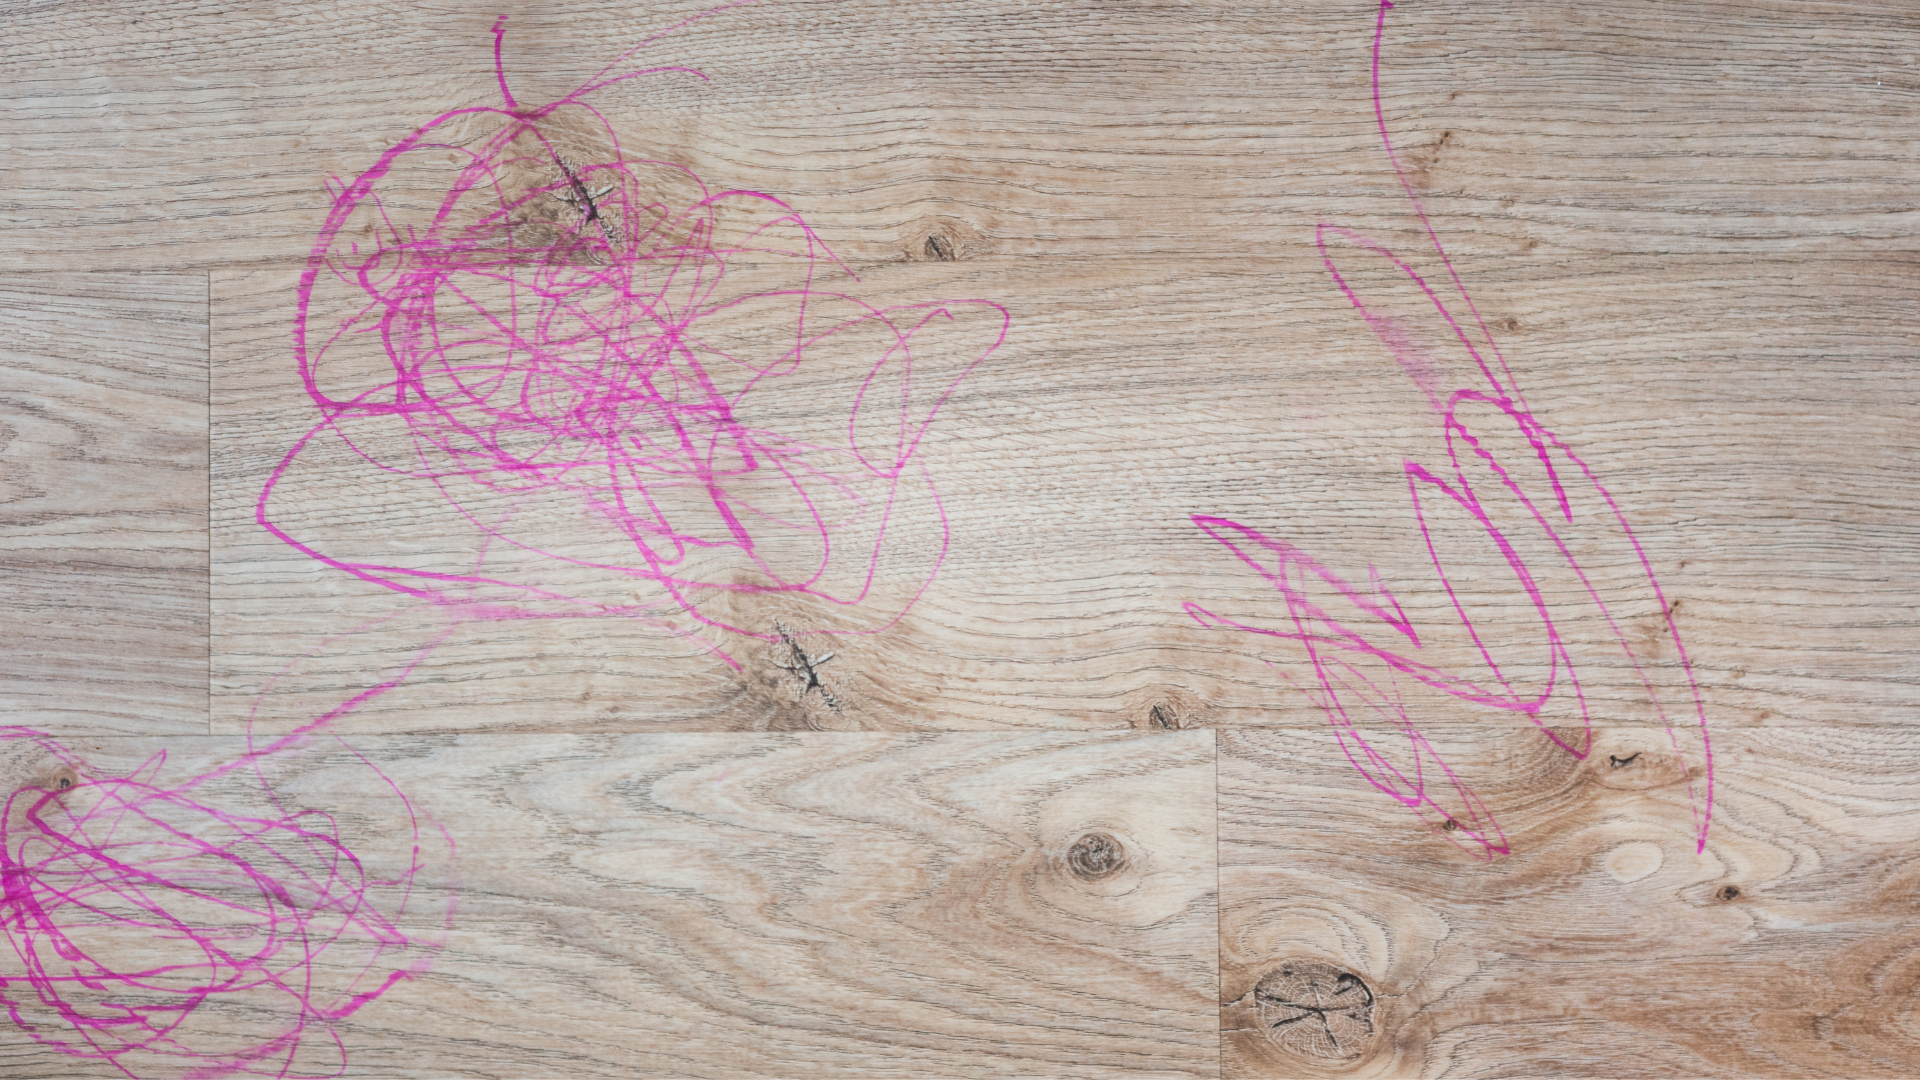 Pink marker colored onto waterproof brown luxury vinyl plank floors